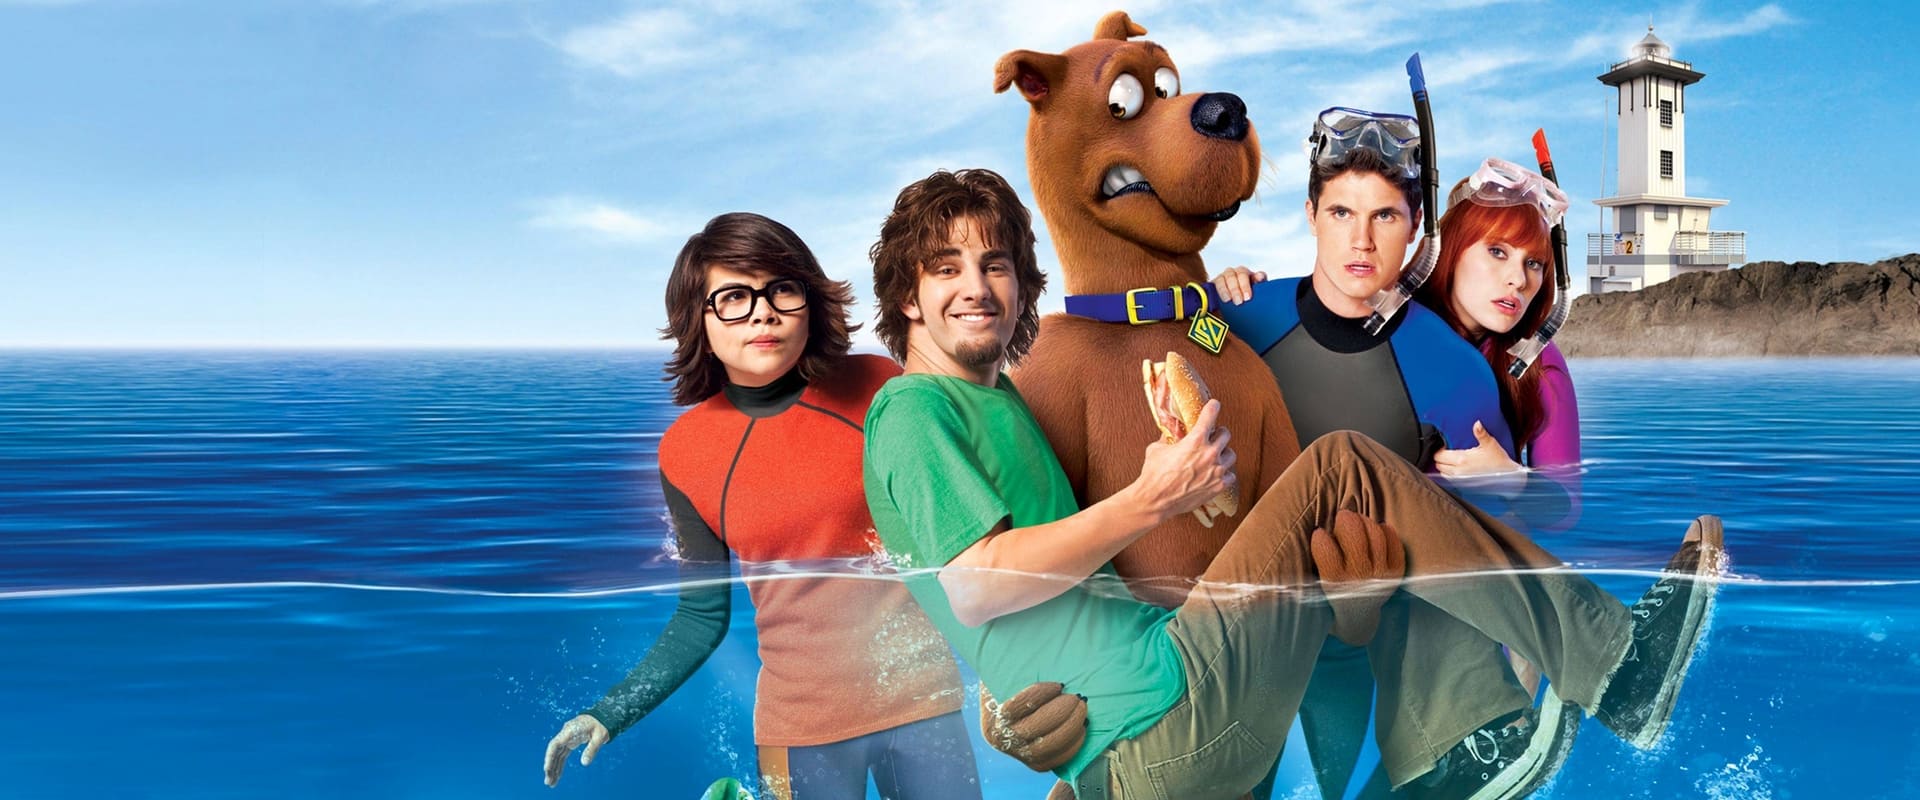 Scooby-Doo ! et le monstre du lac